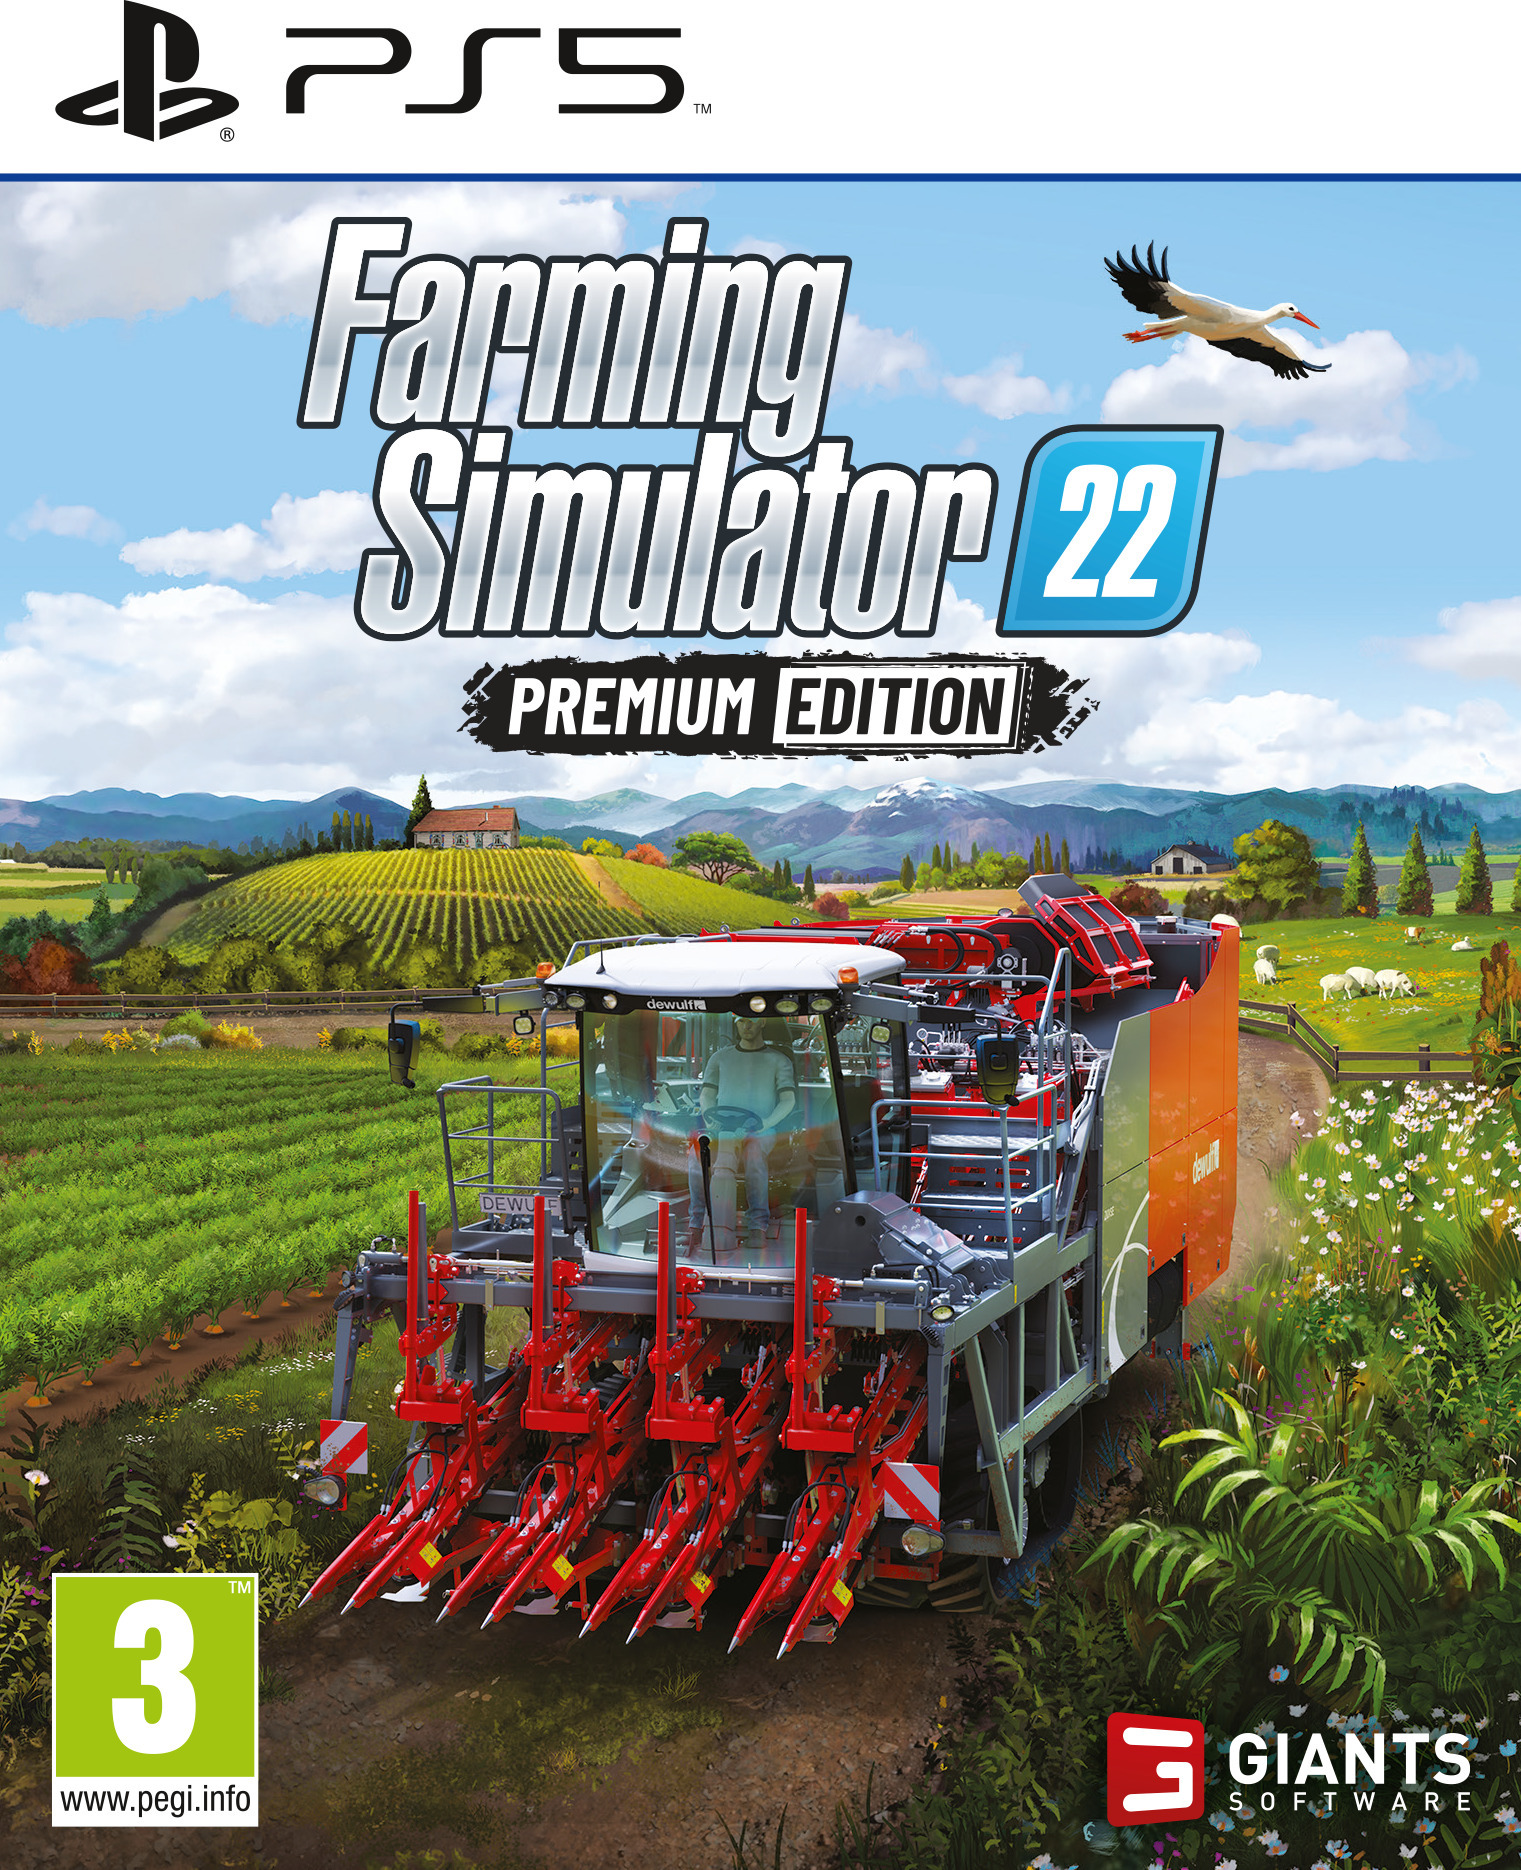 Giants Software Farming Simulator 22 – Premium Edition (PS5)  (PS5217FS22PRE) 